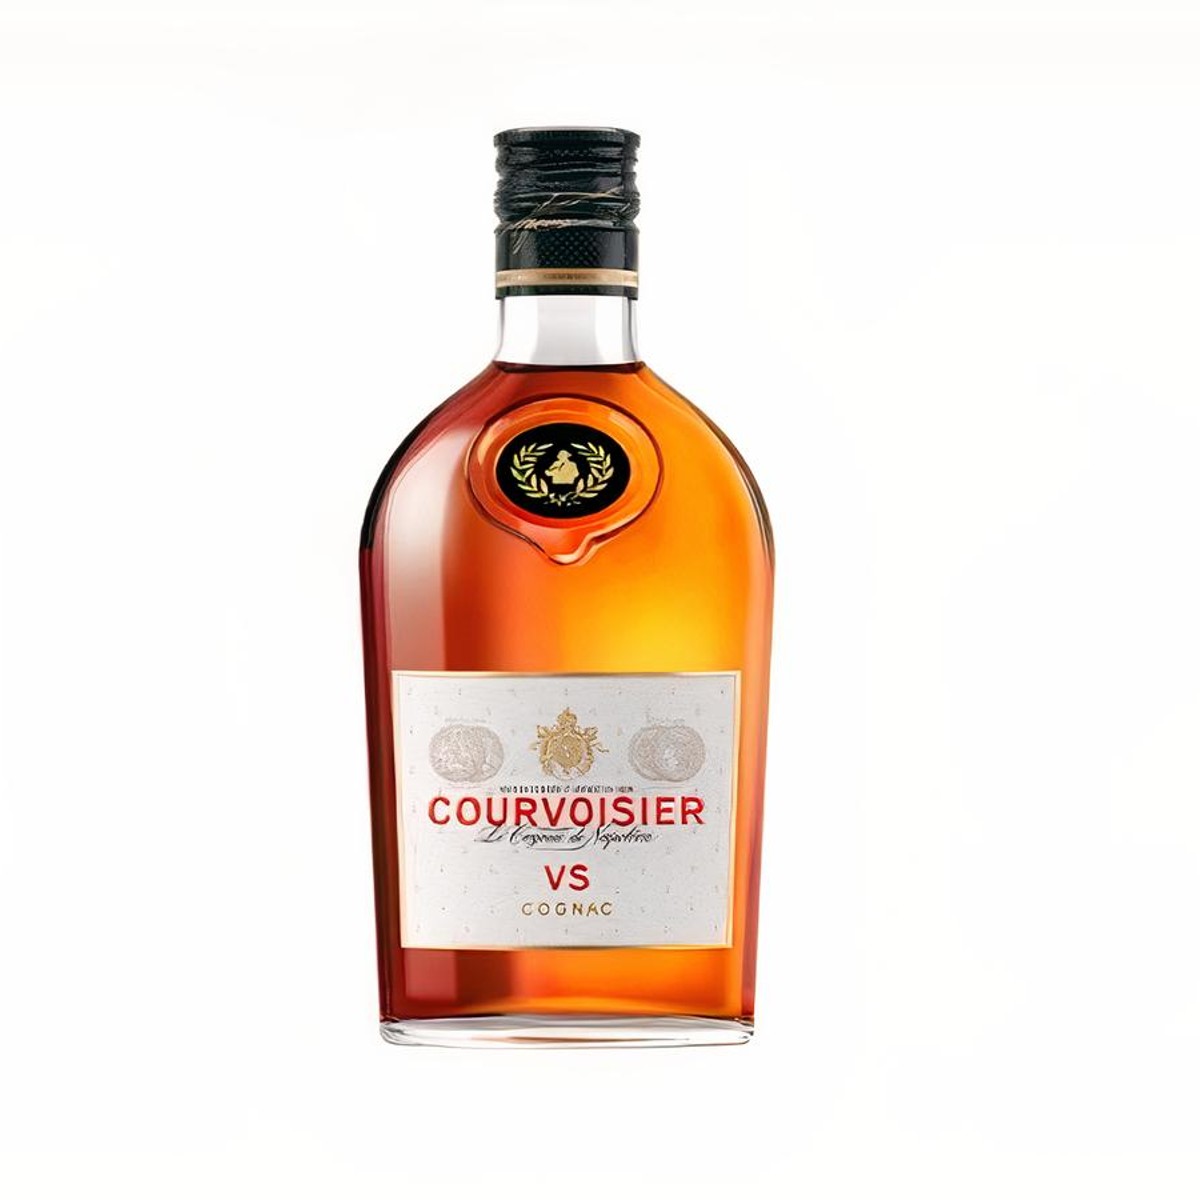 Hennessy Privilege V.S.O.P. Magnum Cognac (Vintage)